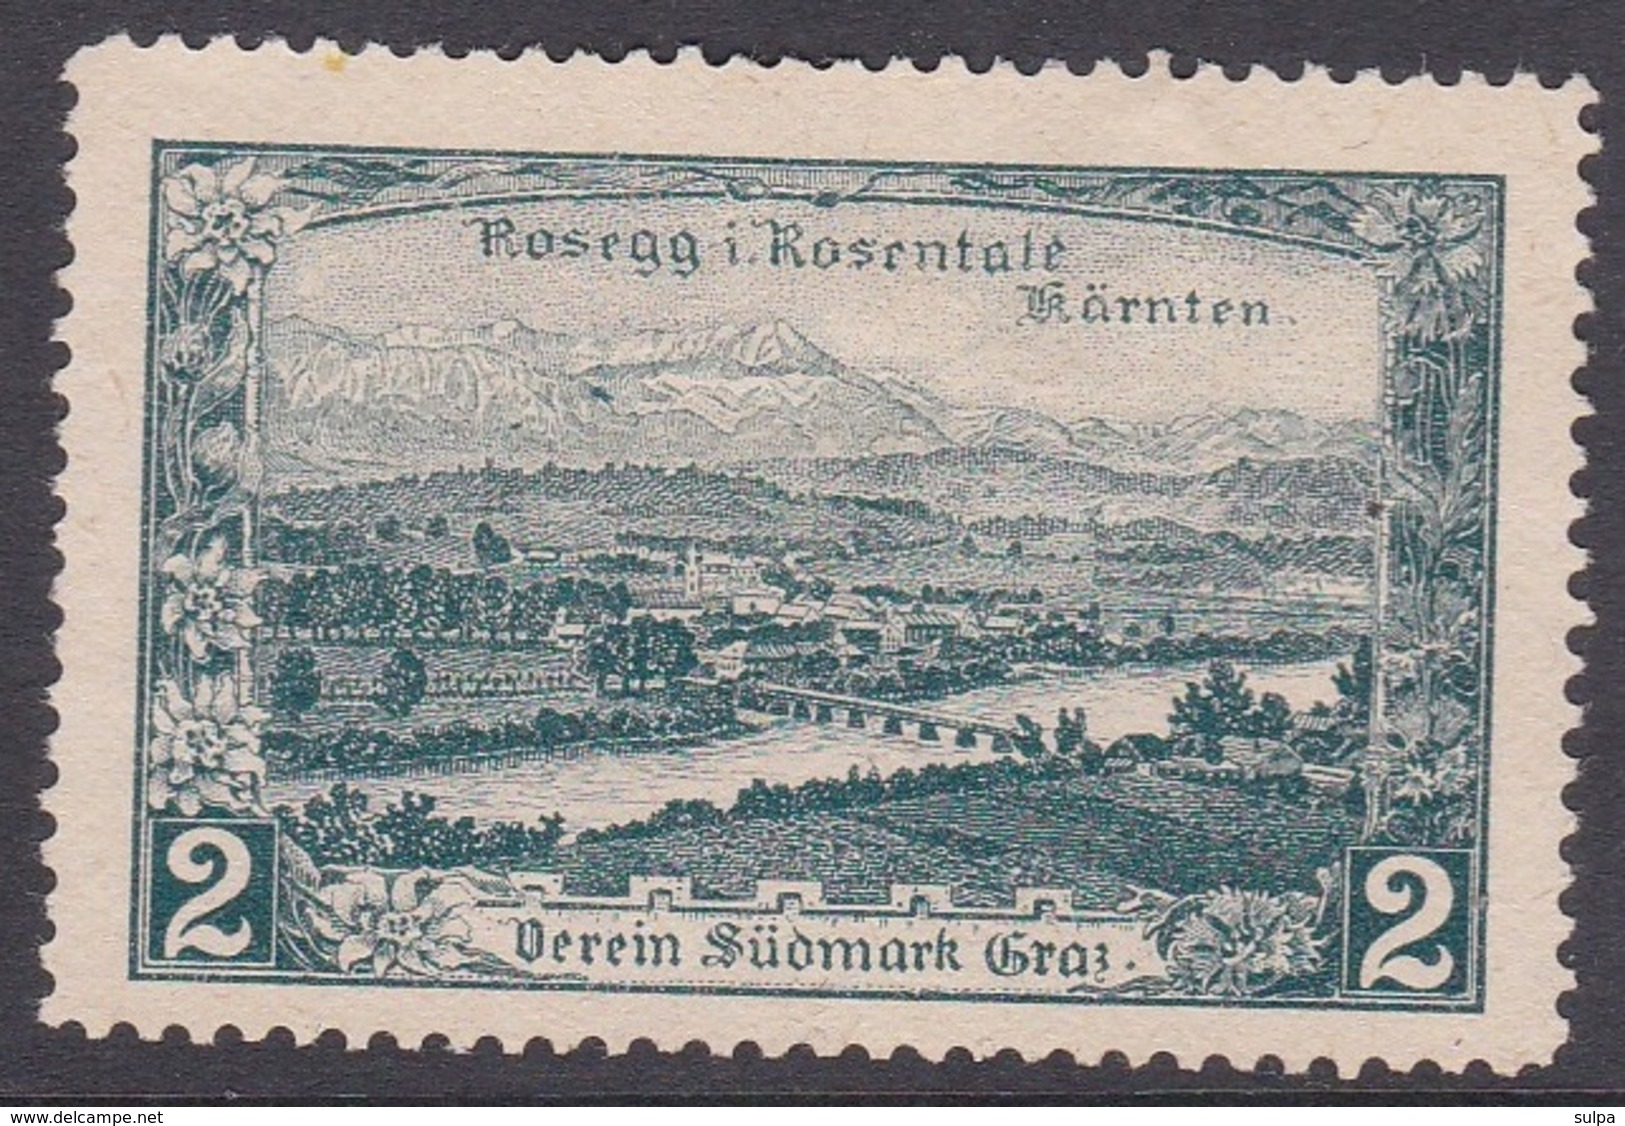 Rosegg I. Rosentale, Verein Südmark, Graz, Spendevignette - Cinderellas